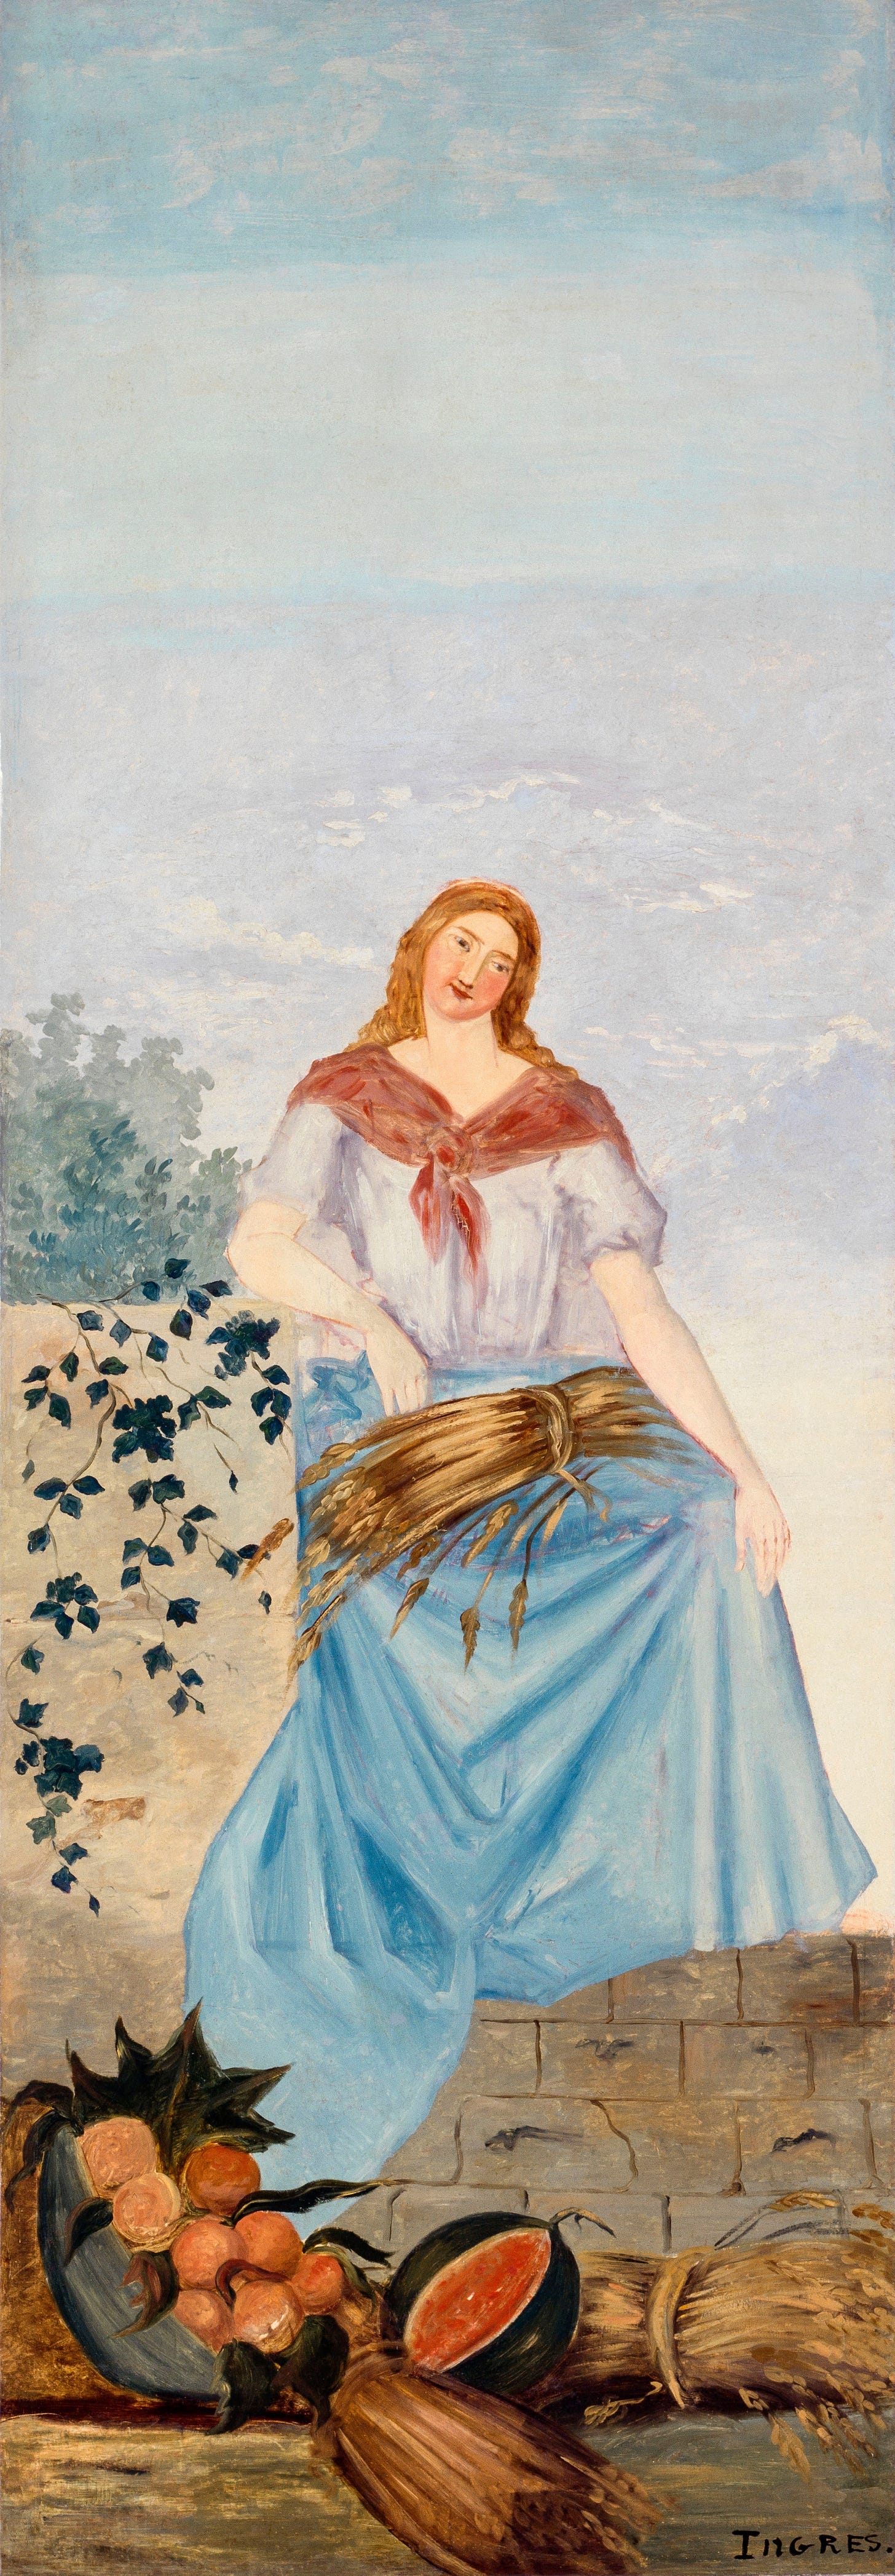 Les quatre saisons – L’été (1860) by Paul Cézanne